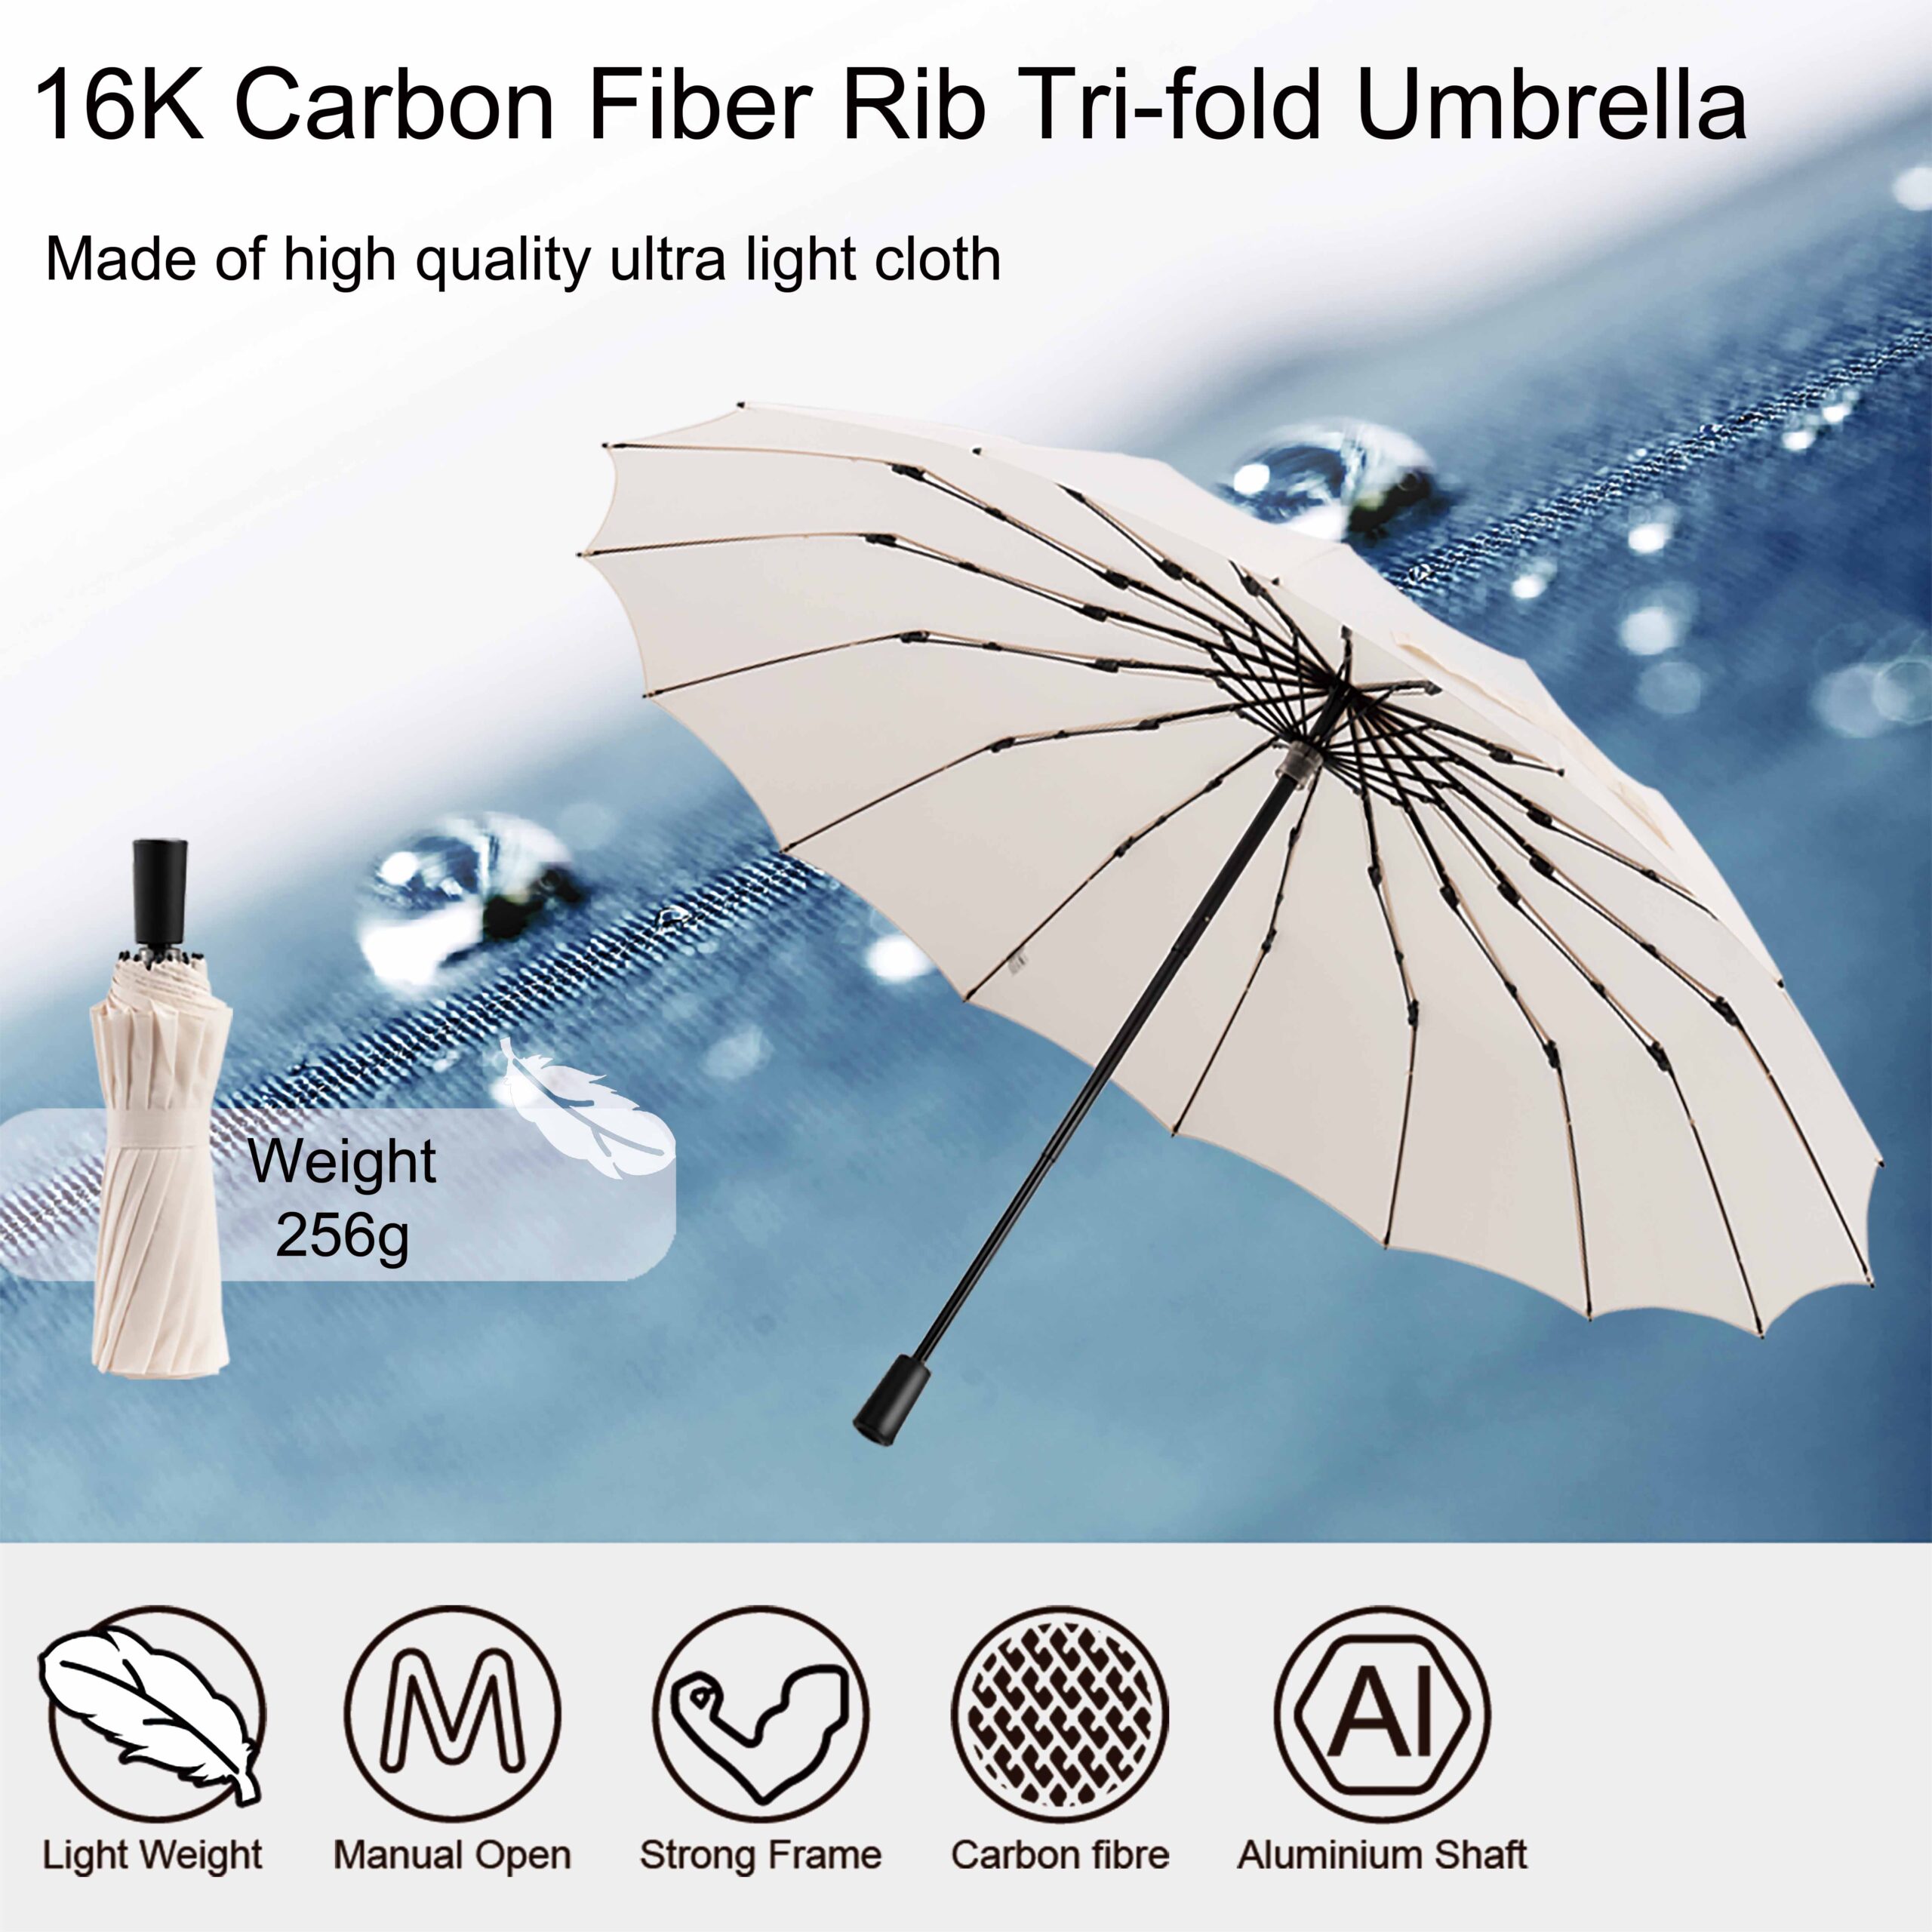 carbon fiber tri-fold umbrella